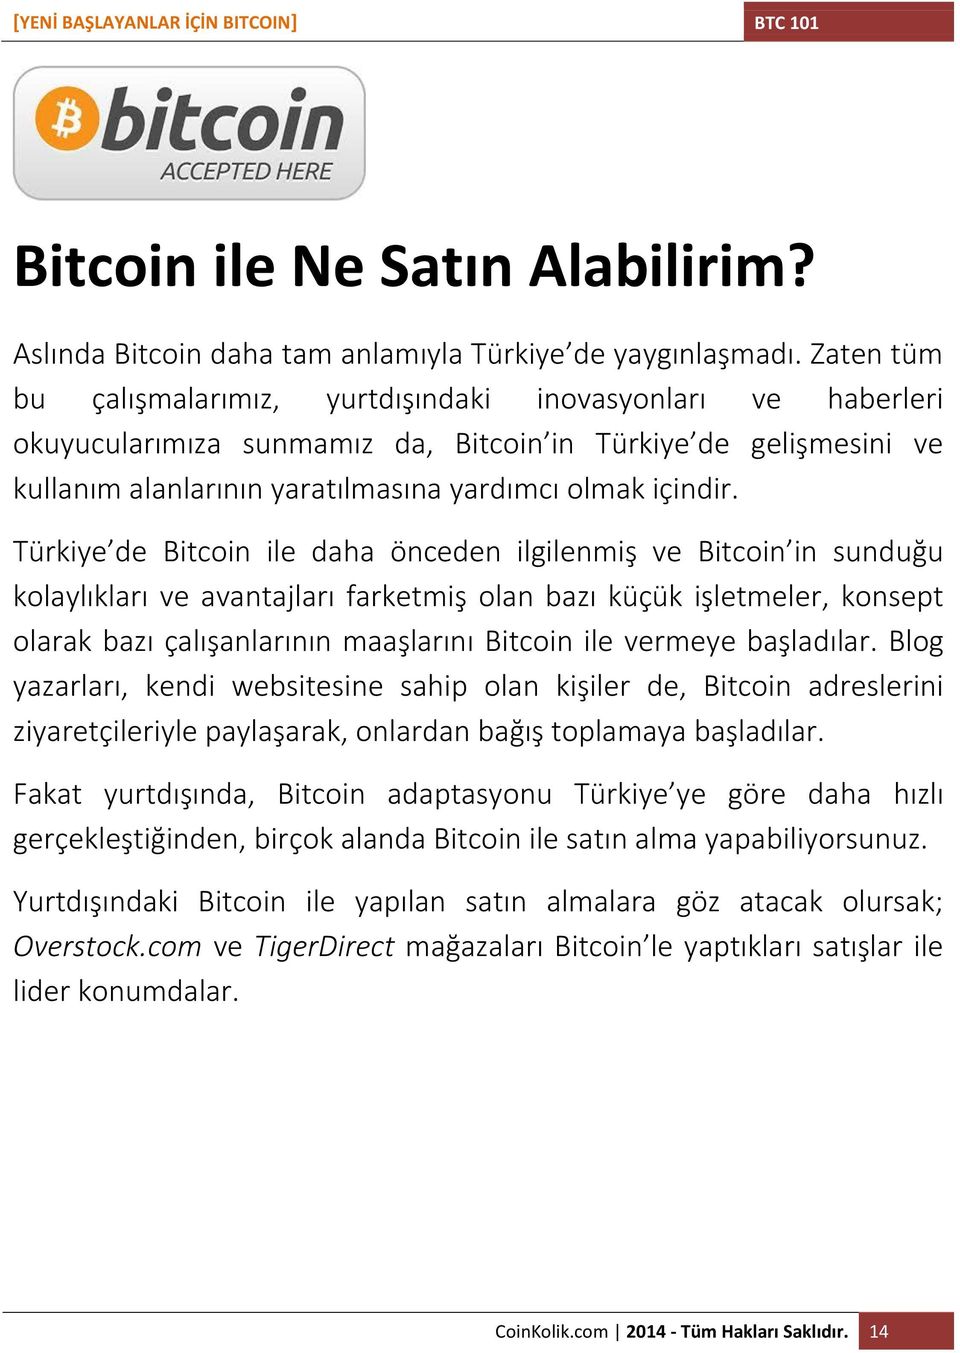 Türkiye de Bitcoin ile daha önceden ilgilenmiş ve Bitcoin in sunduğu kolaylıkları ve avantajları farketmiş olan bazı küçük işletmeler, konsept olarak bazı çalışanlarının maaşlarını Bitcoin ile